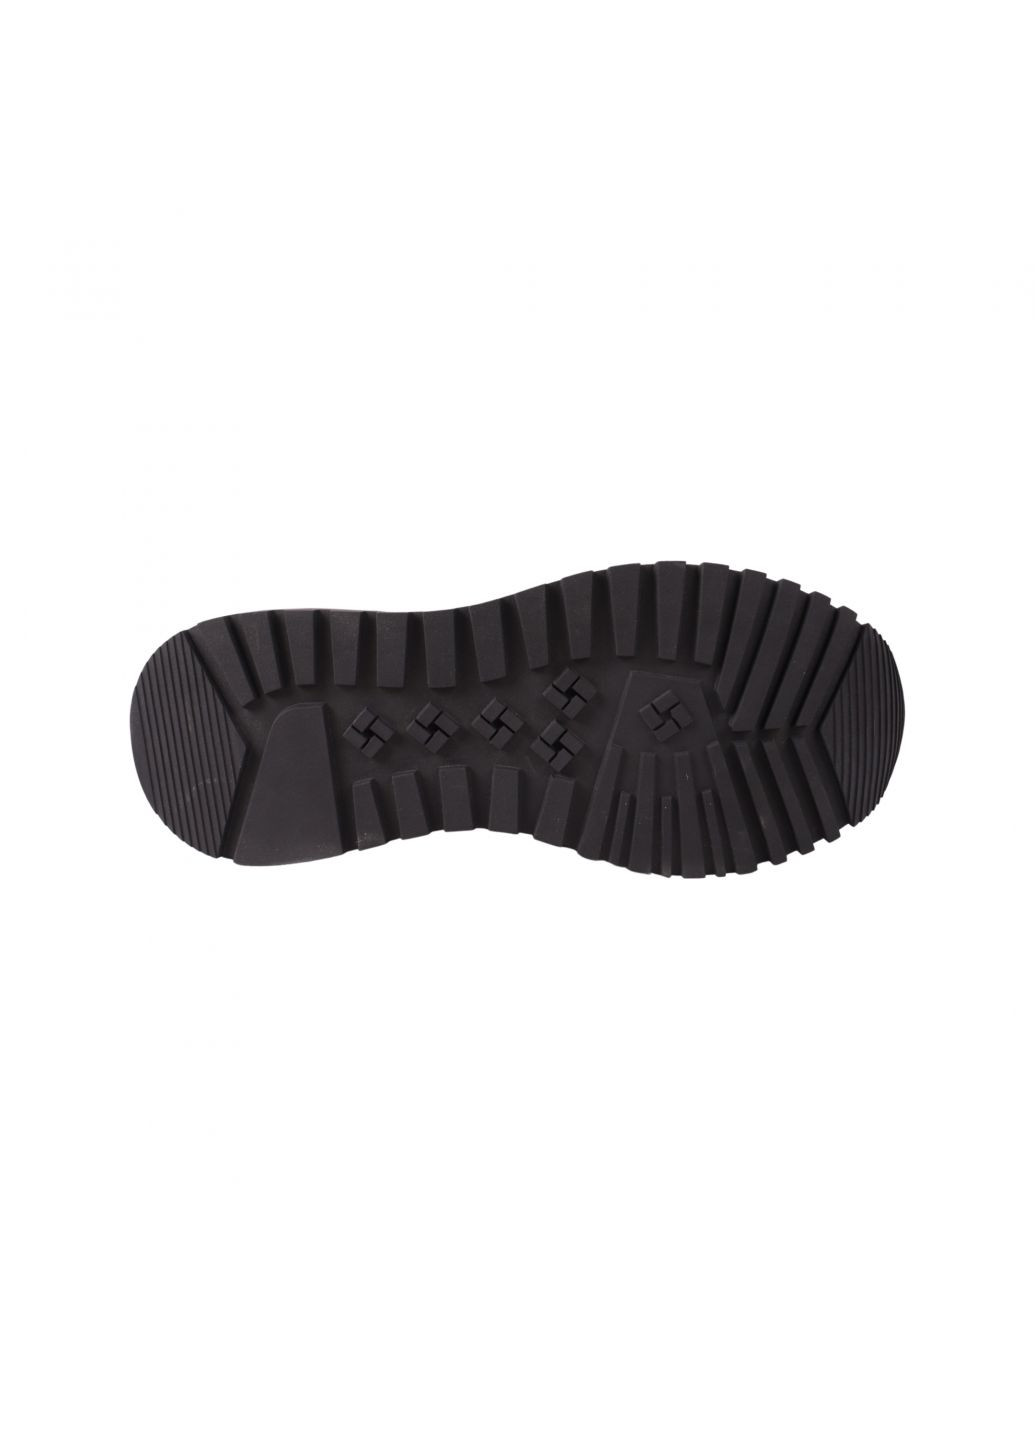 Черные кроссовки мужские черные натуральная кожа Brooman 971-23DTS